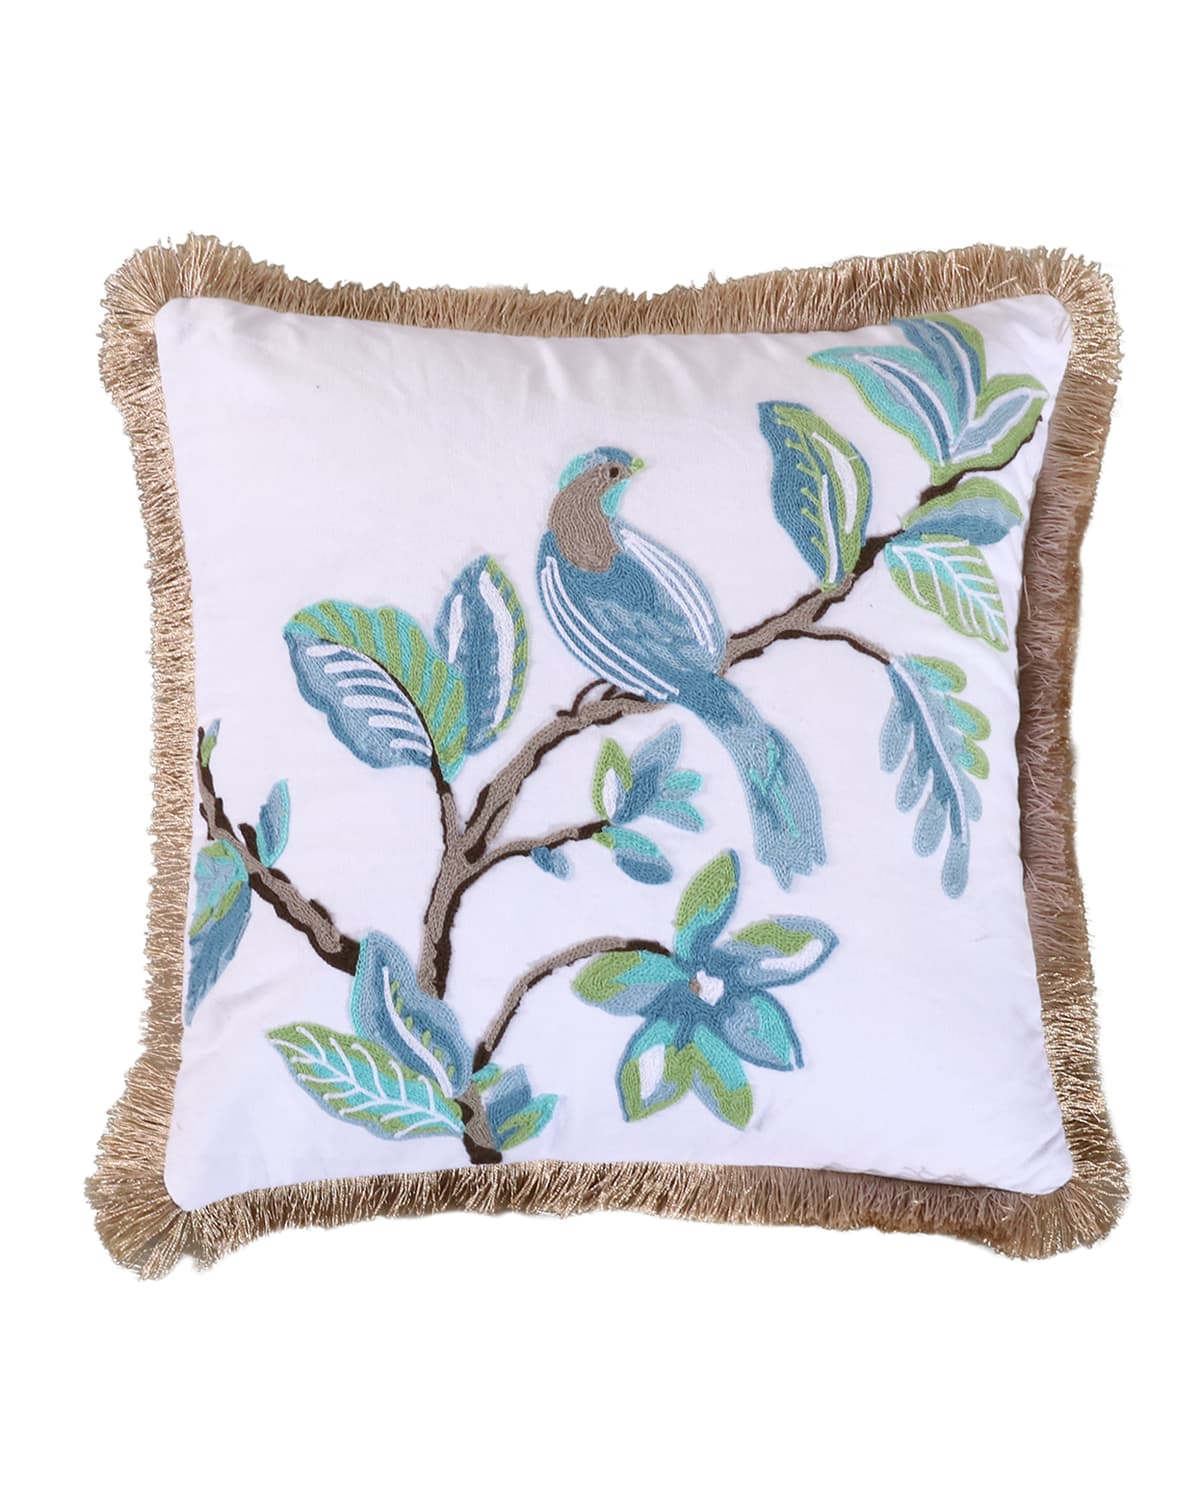 Levtex Home Cressida Crewel Bird Fringe Trim Decorative Pillow, 18" X 18" In Multi